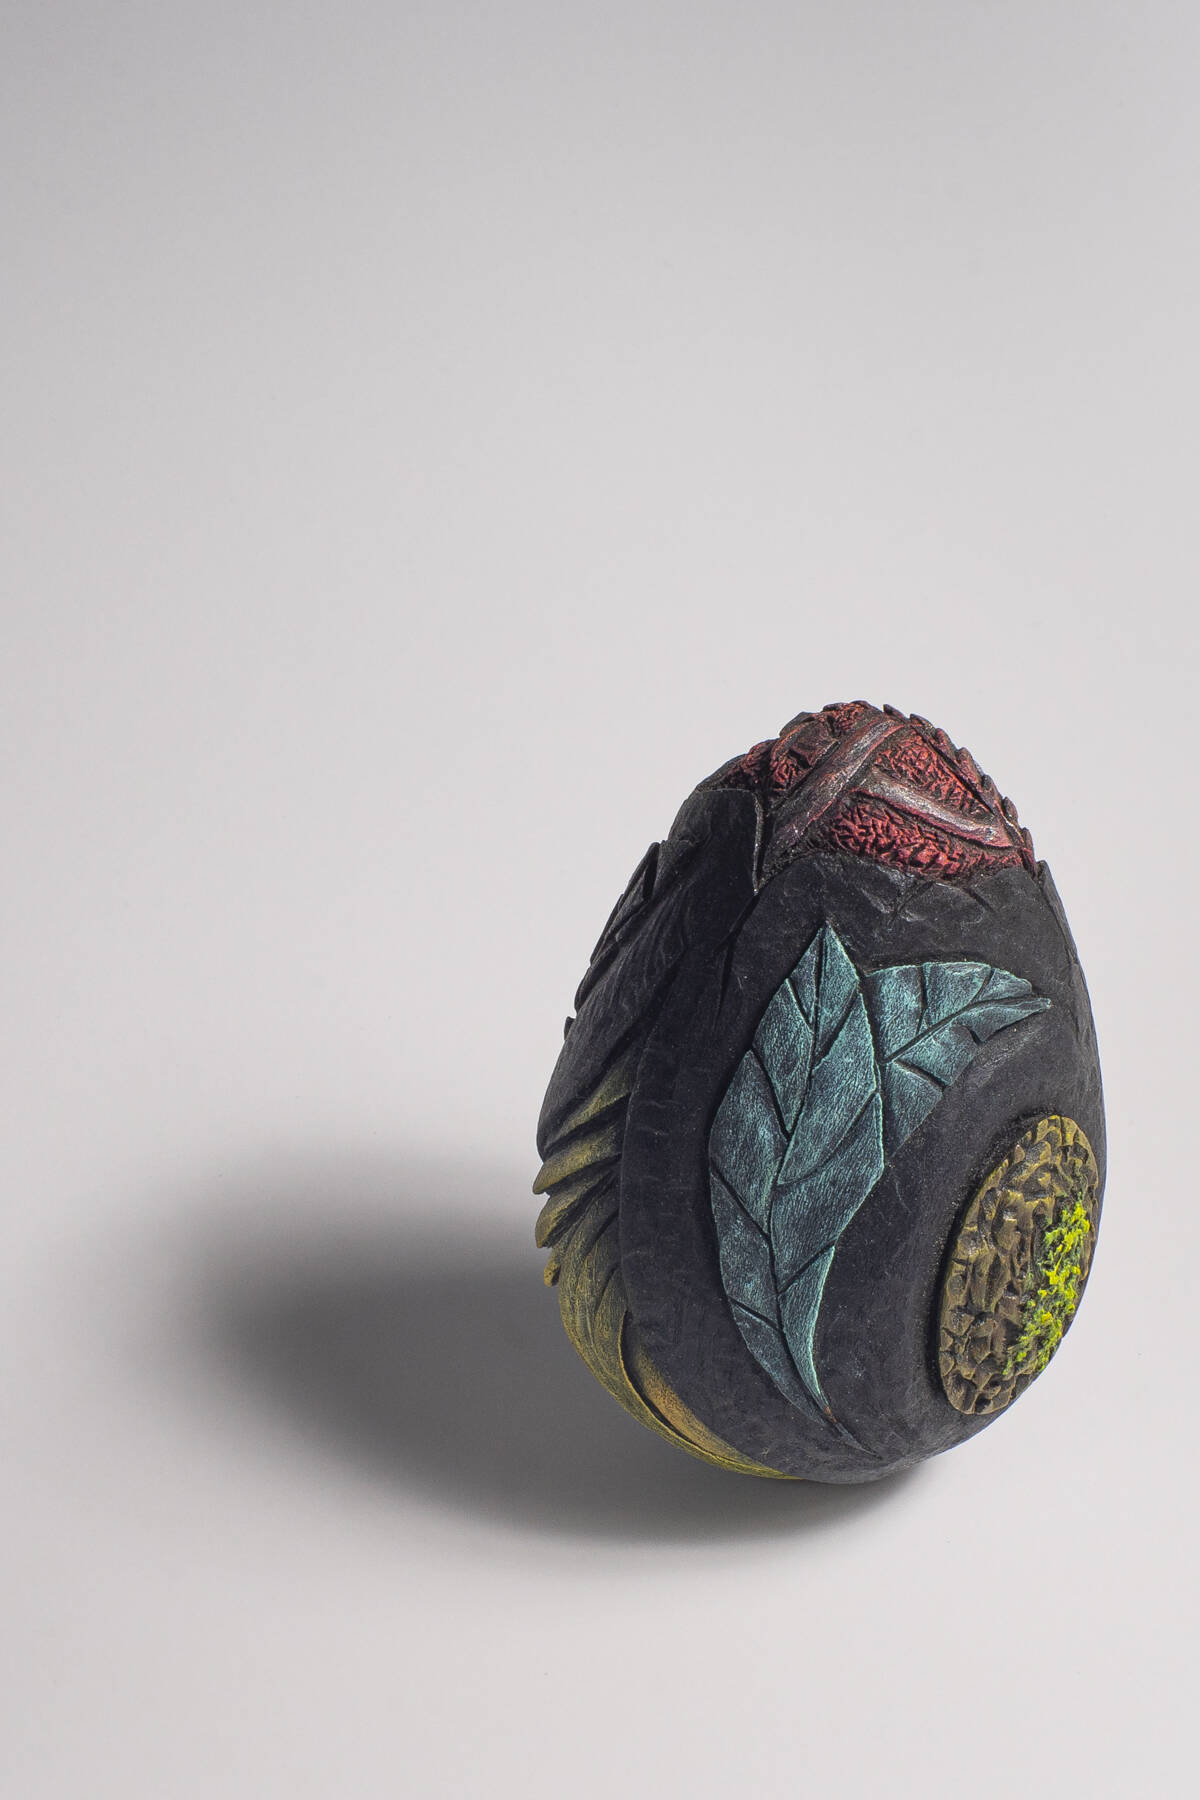 Dragon Egg - une création unique de Coralie Saramago - crédits photo : Boris Bineau